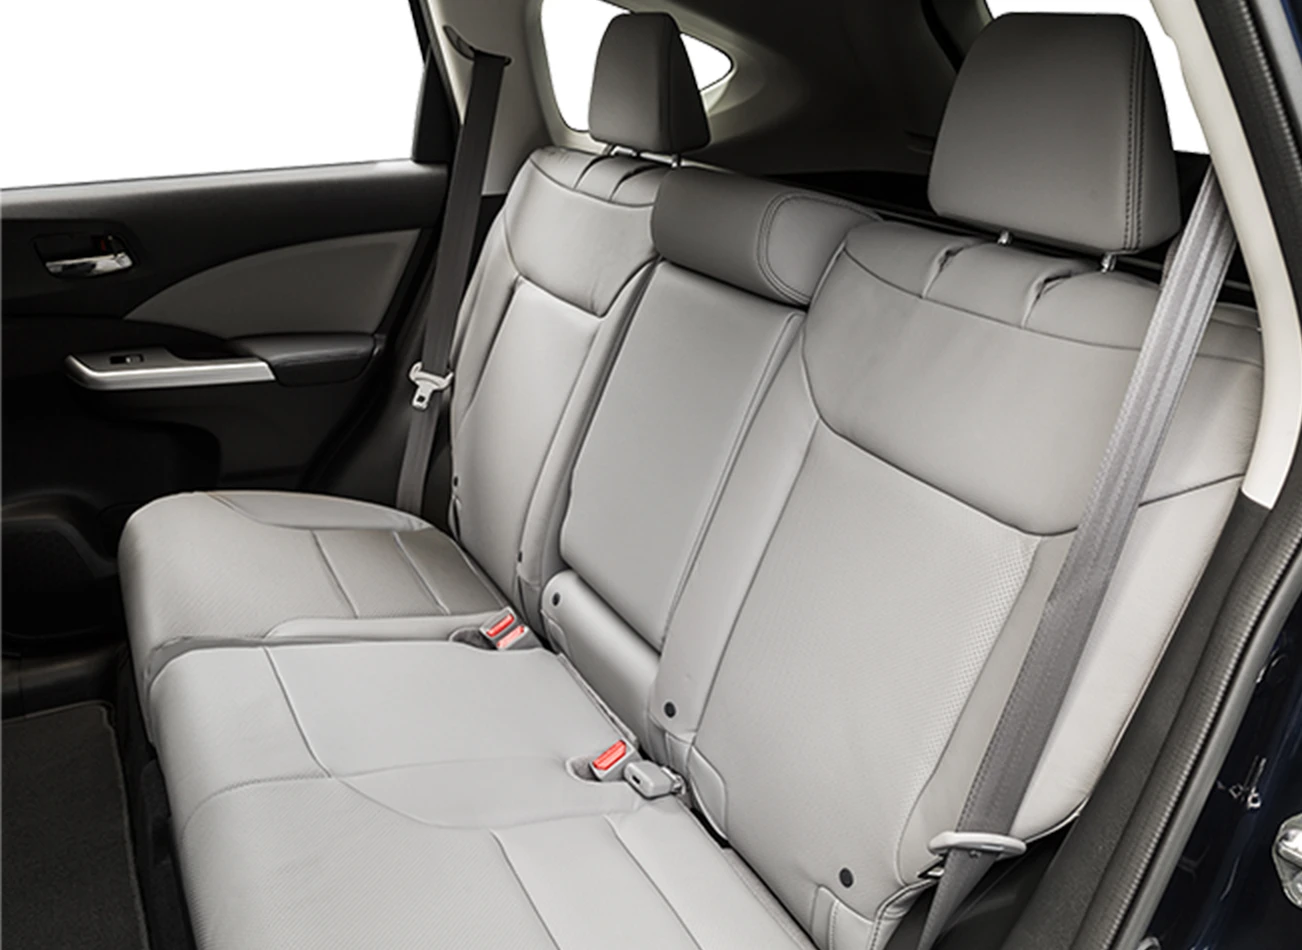 2015 Honda CR-V Review: Interior Trim | CarMax